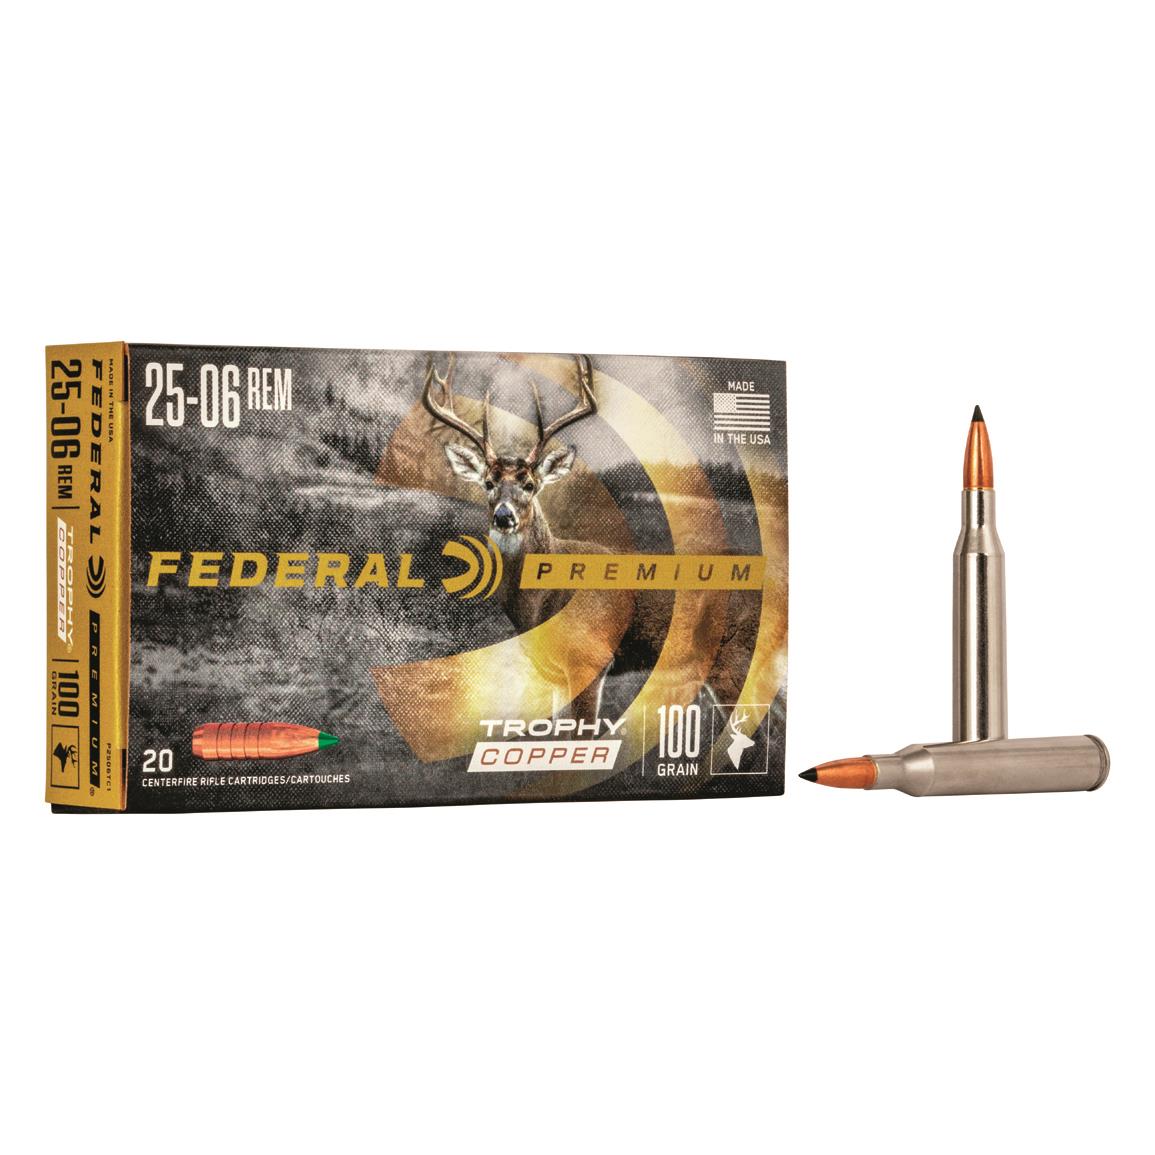 Federal Premium Vital-Shok, .25-06 Remington, Trophy Copper BT, 100 Grain , 20 Rounds